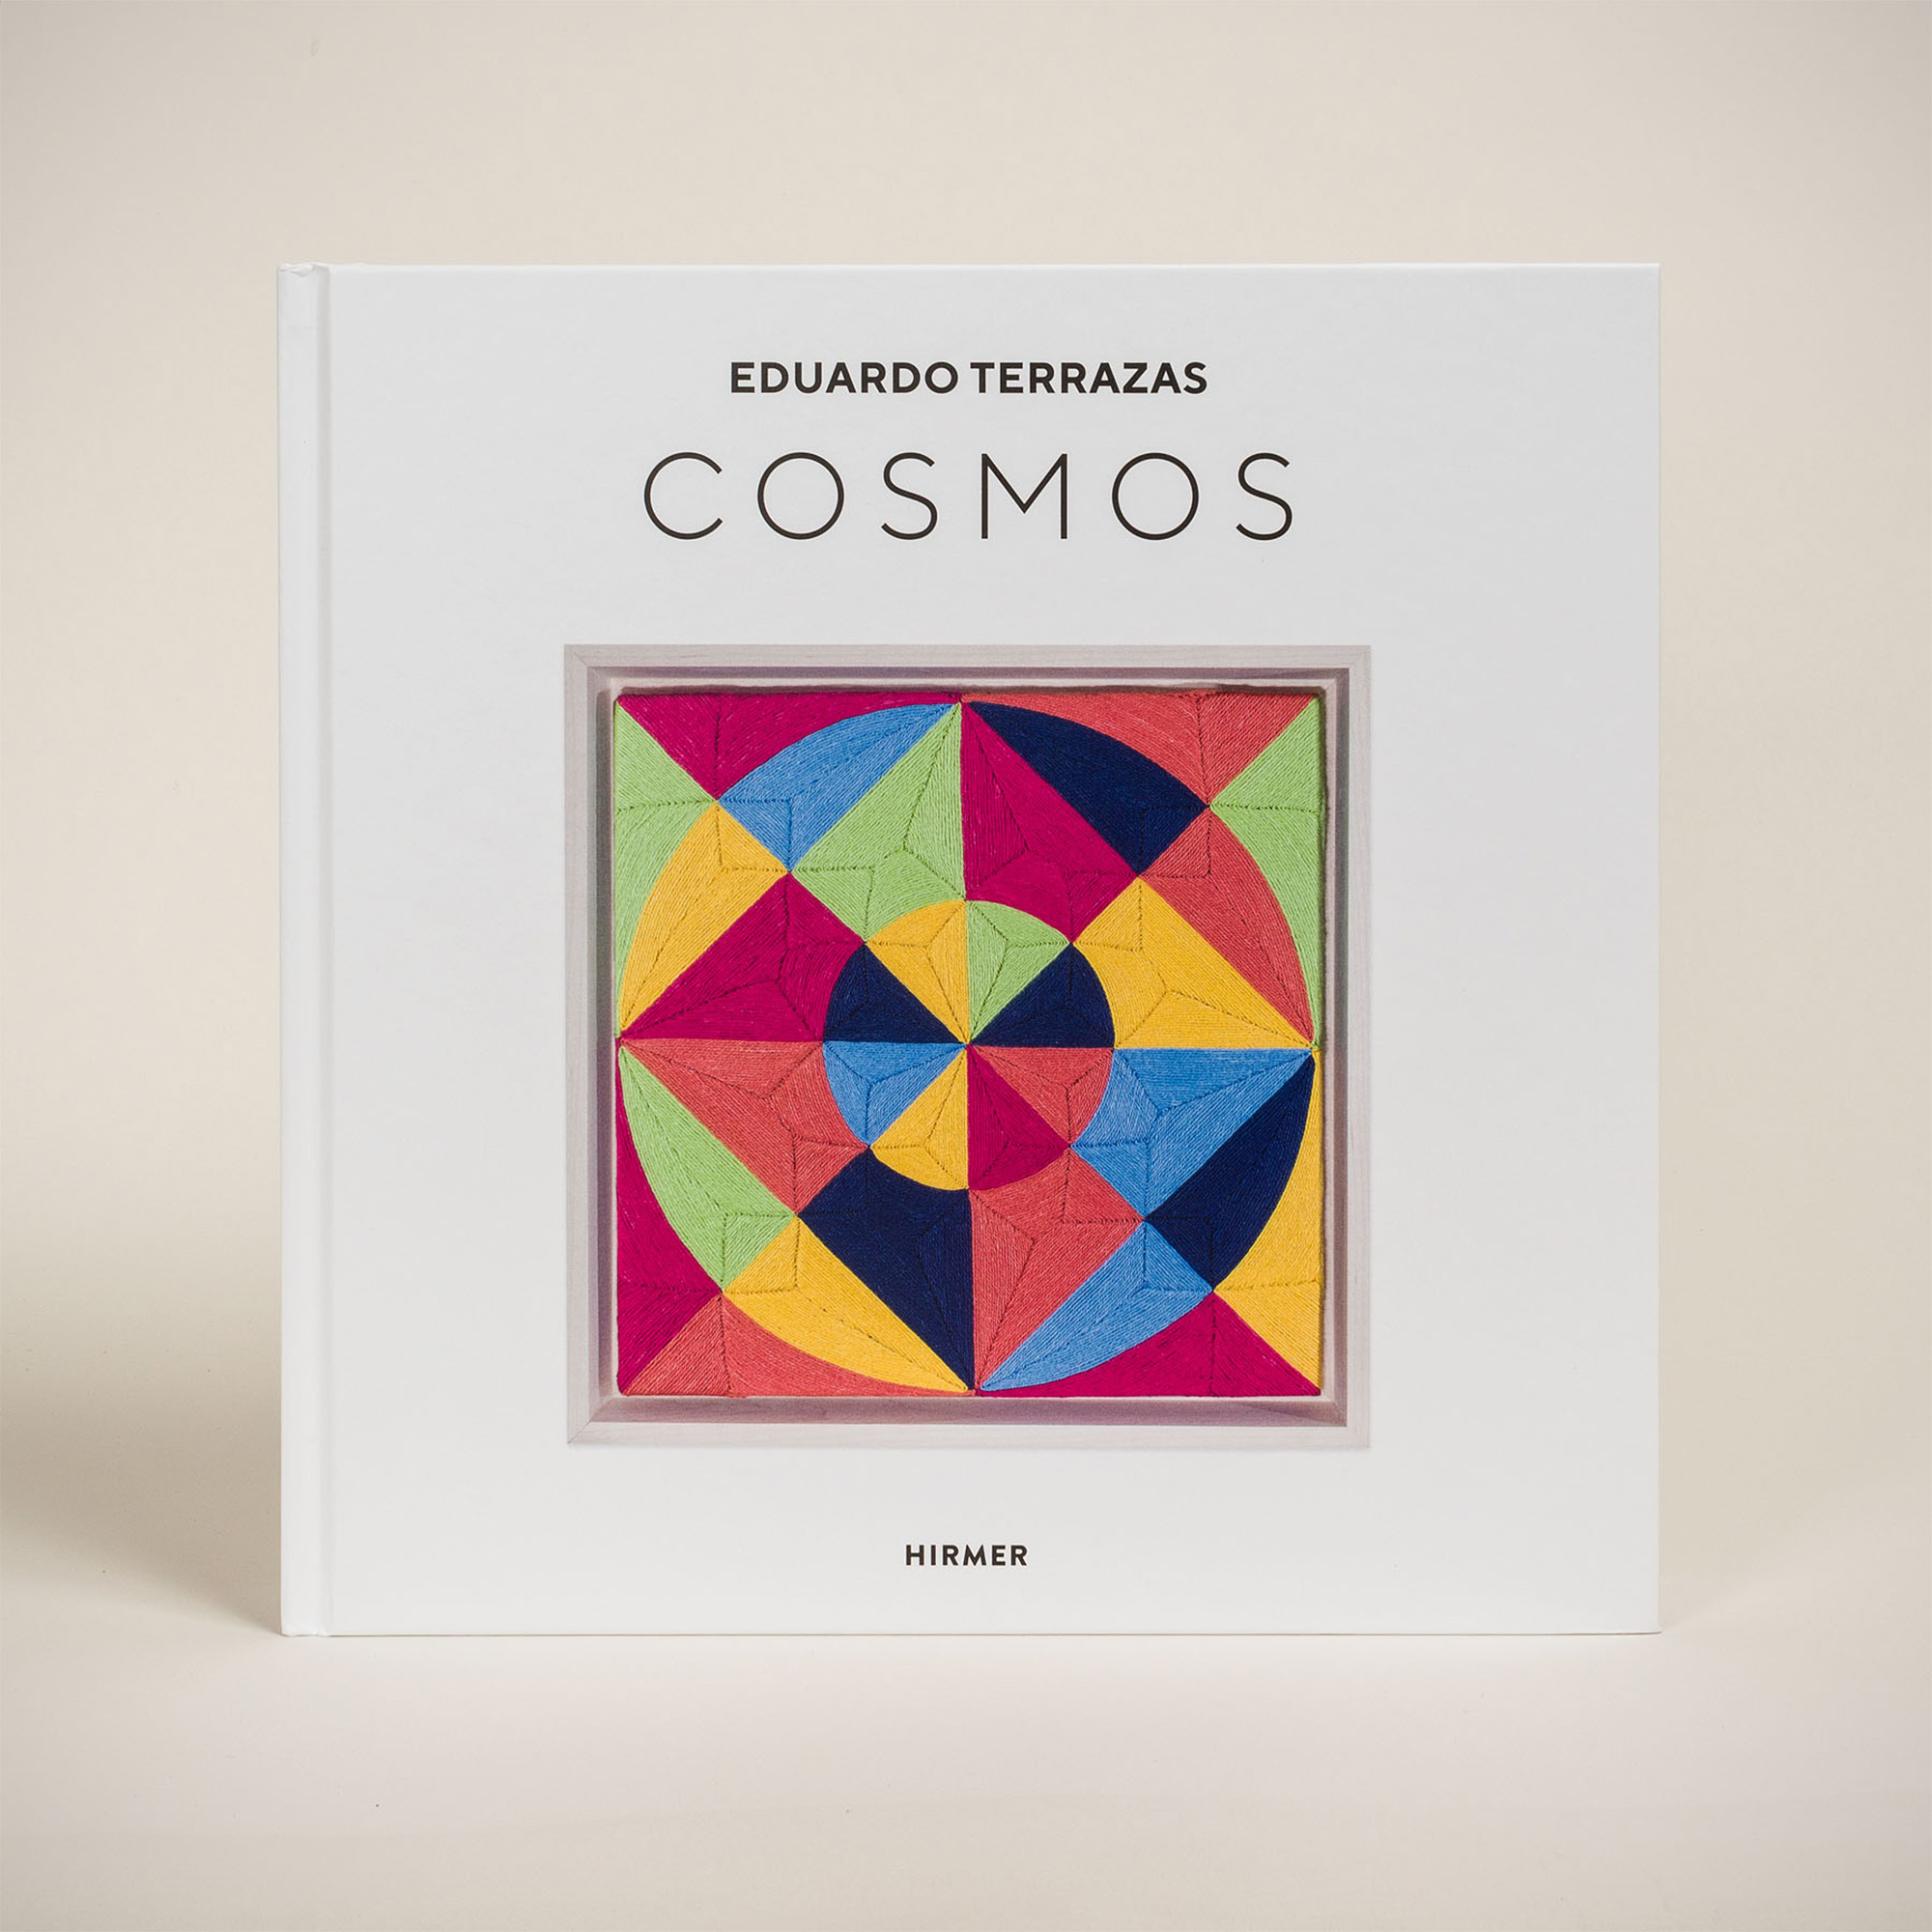 "Cosmos" - Eduardo Terrazas (Hirmer).